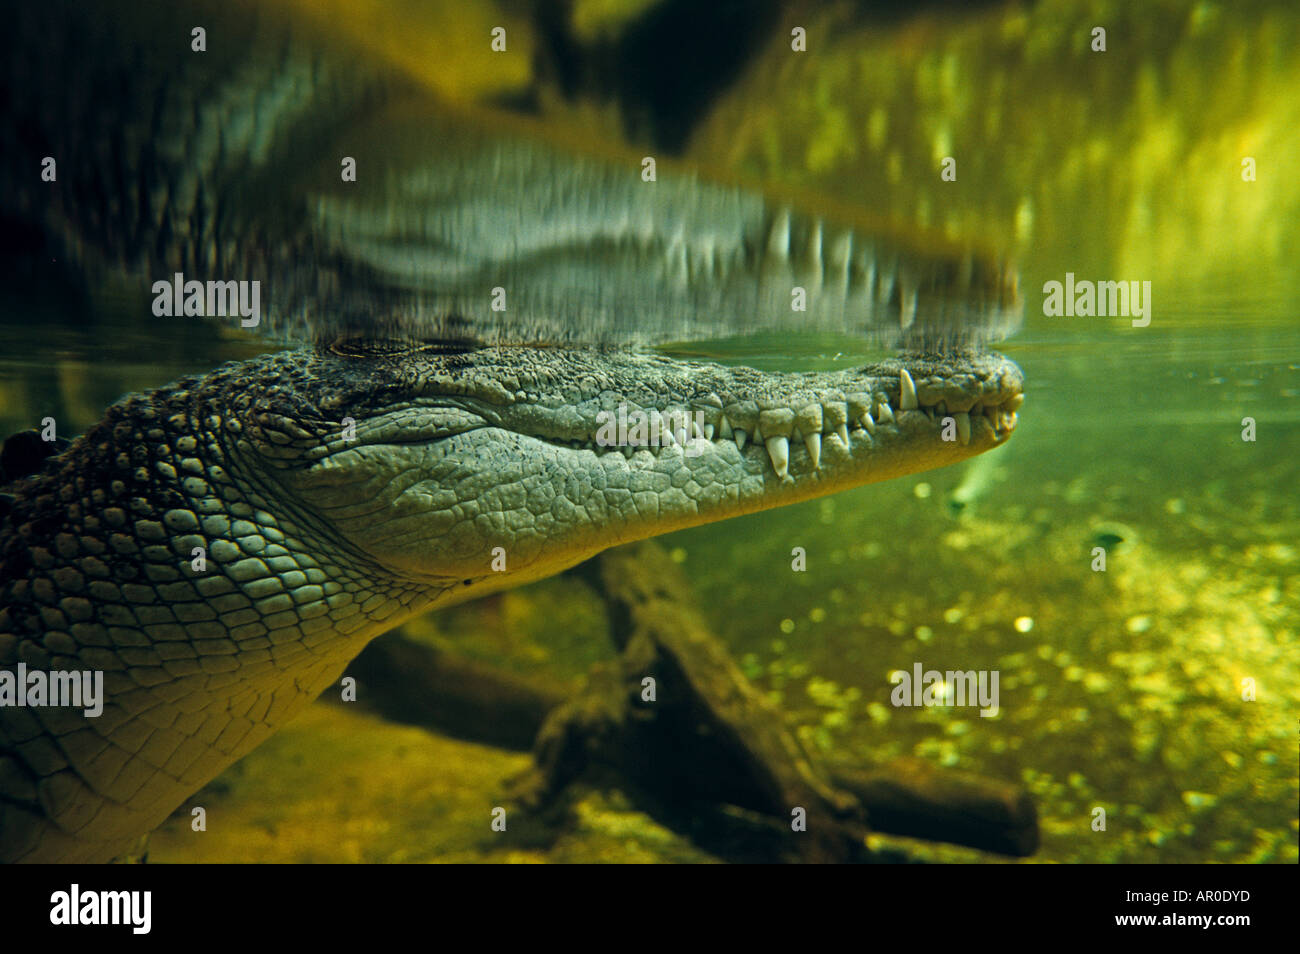 submerged crocodile, Sydney Aquarium, Sydney, Australia Stock Photo